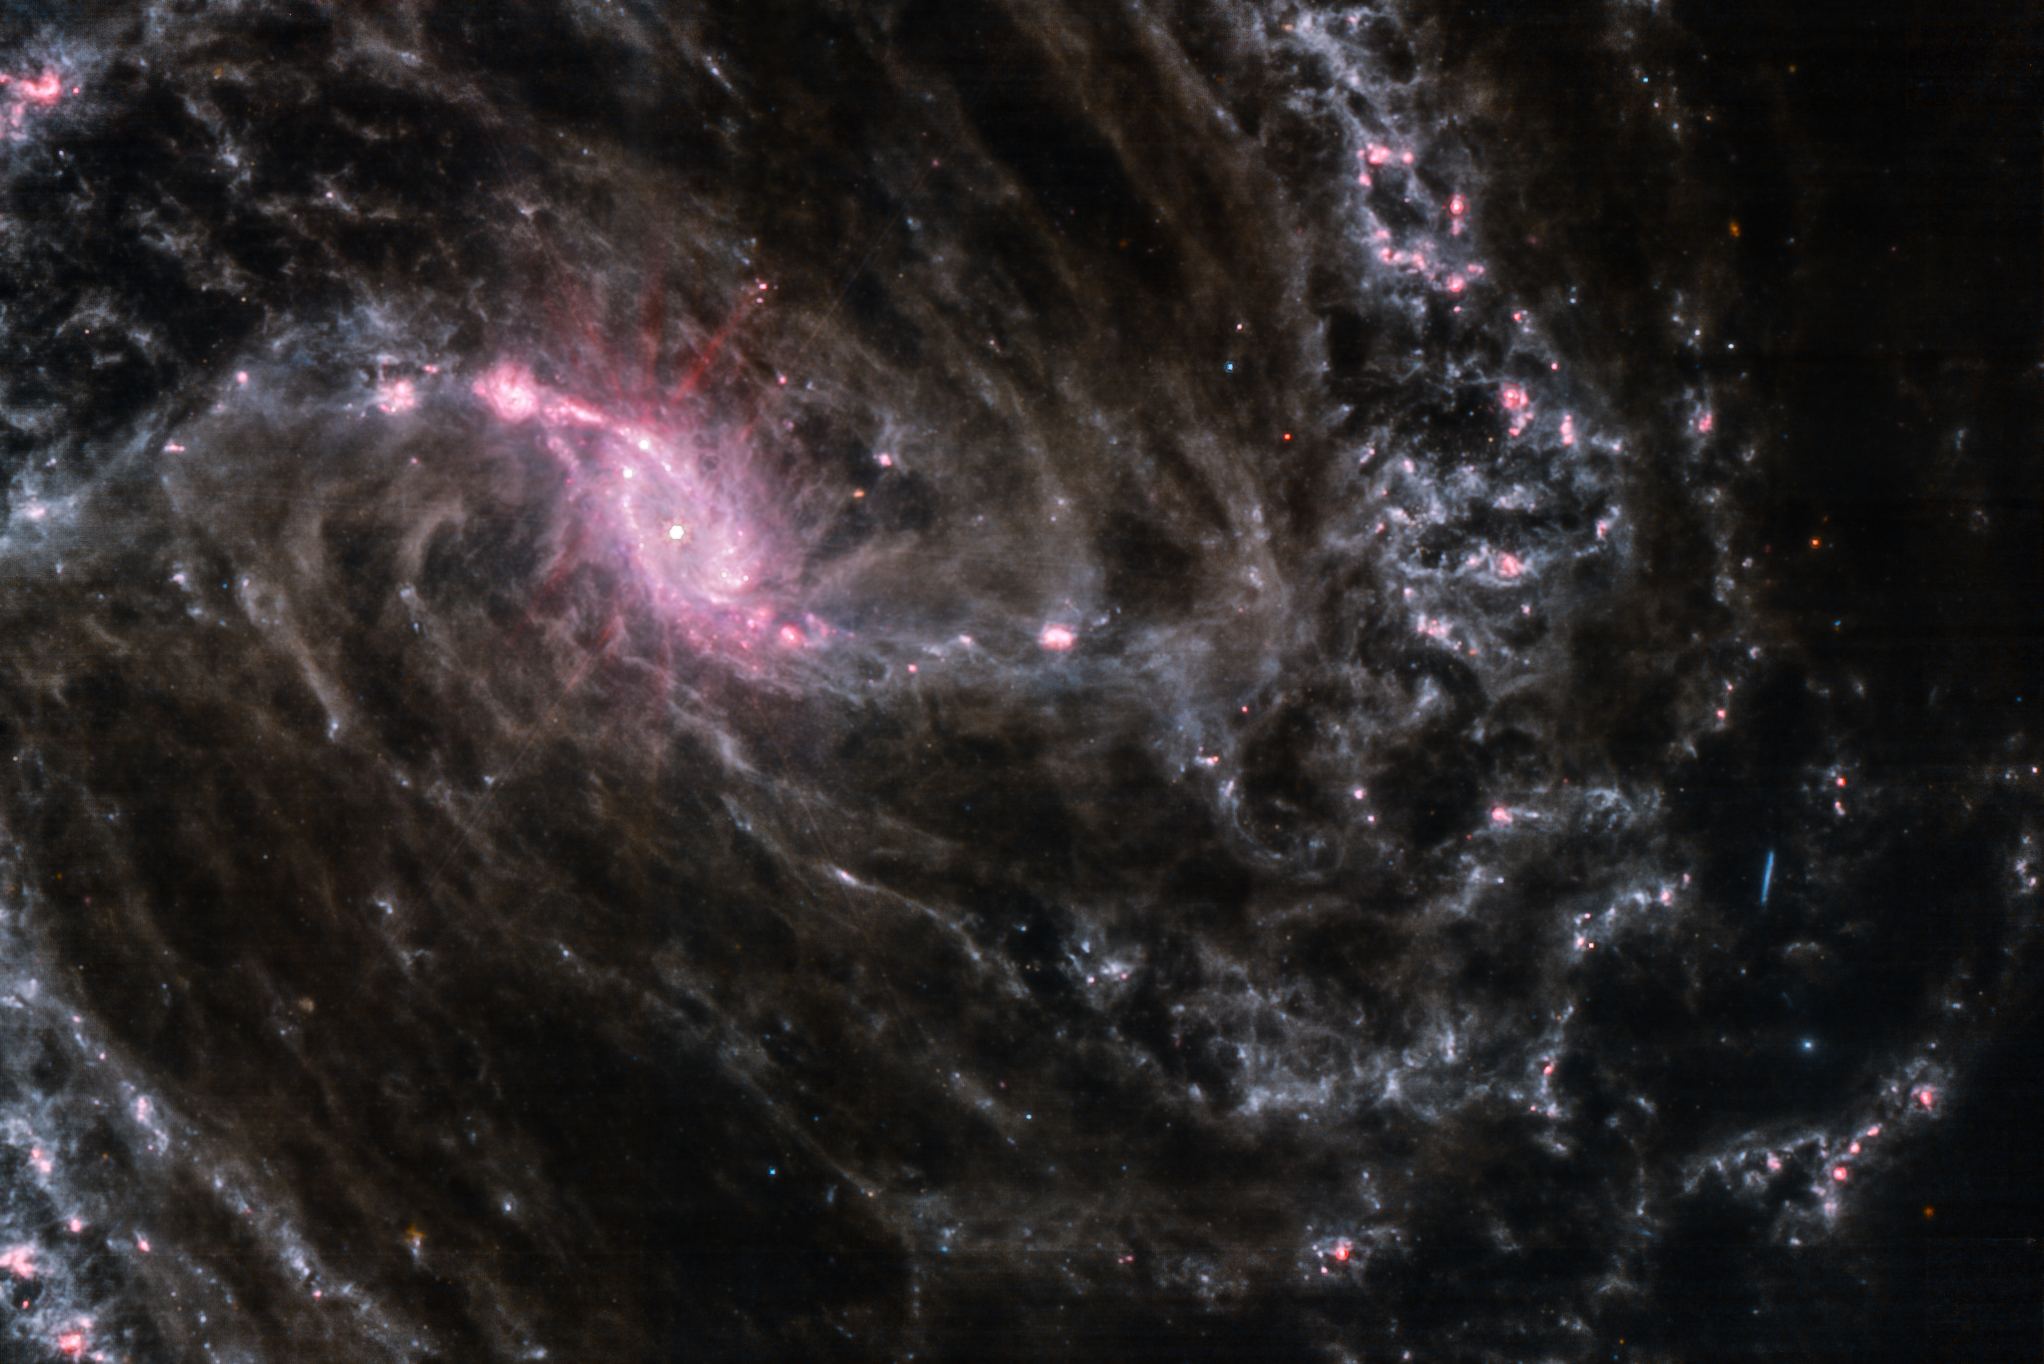 Una nuova immagine dal web mostra la galassia NGC 1365, nota per contenere un buco nero supermassiccio che si sta alimentando attivamente